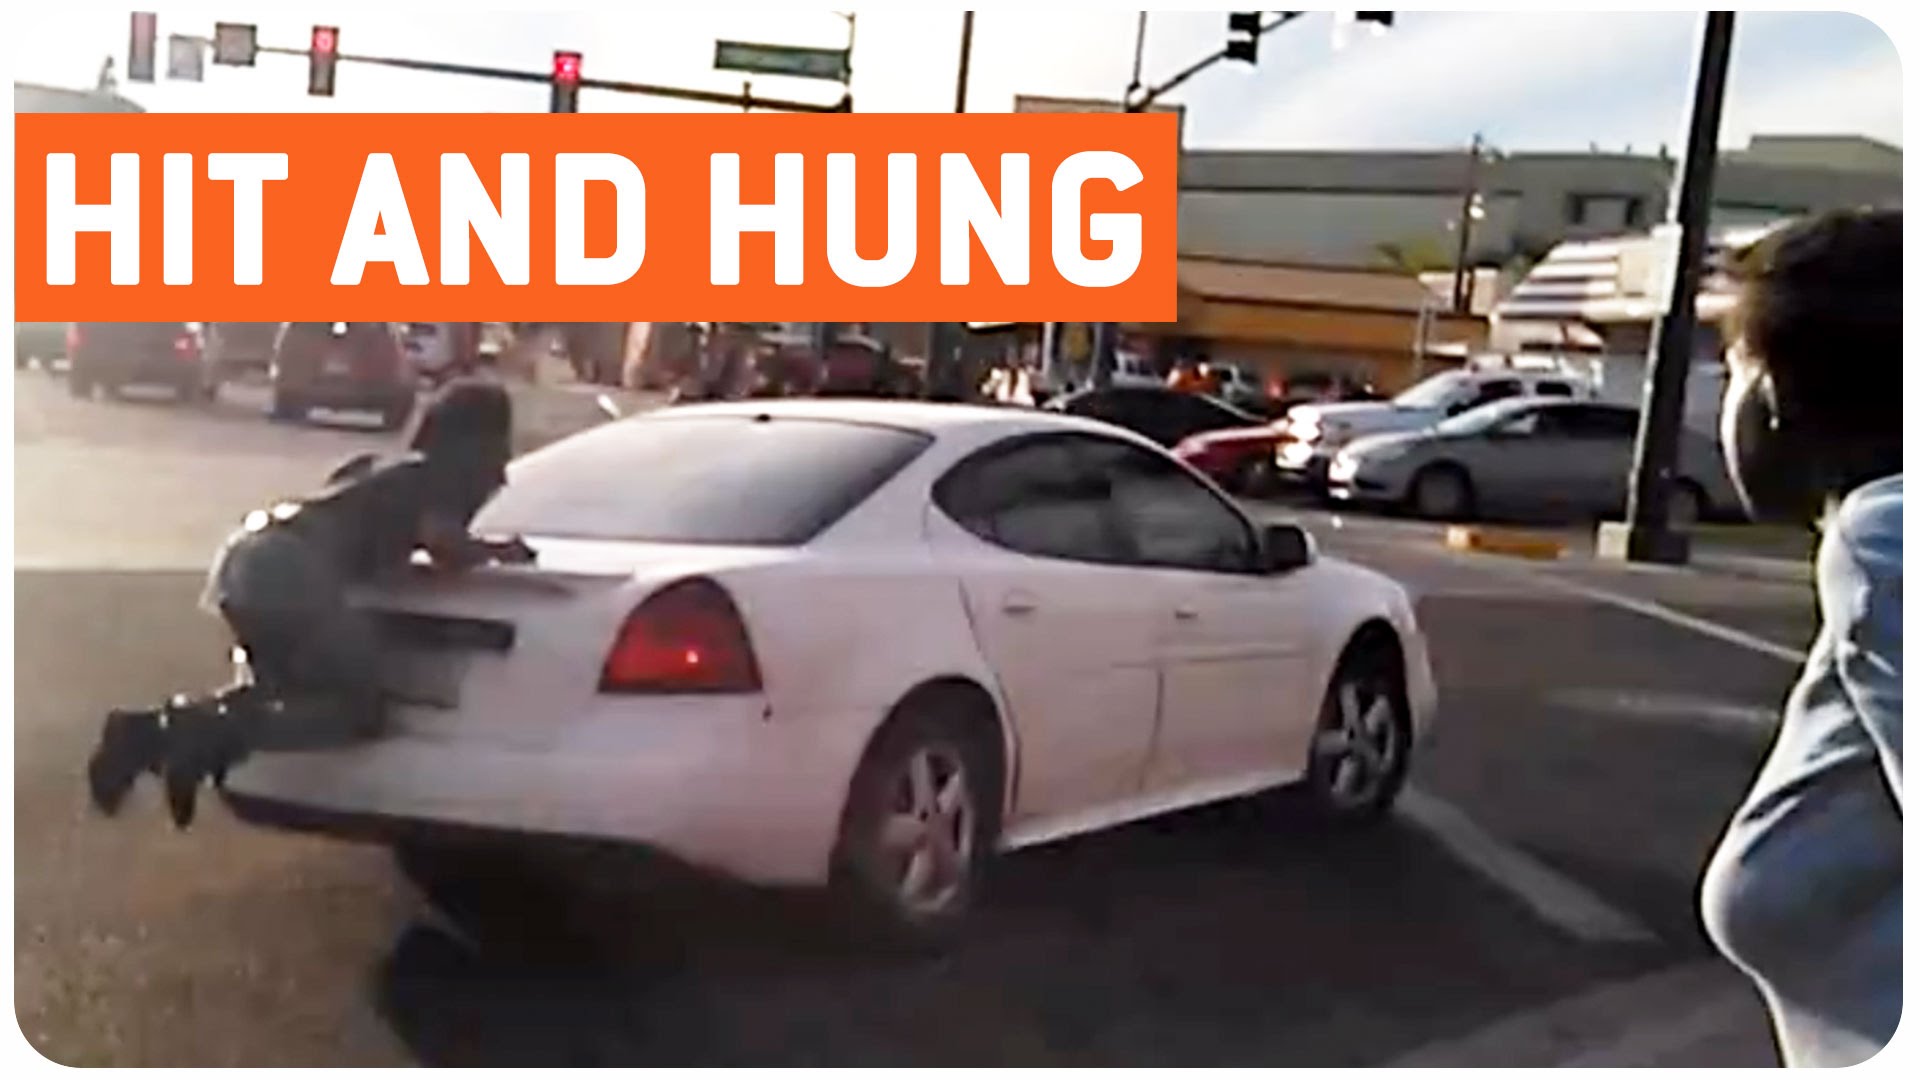 VIDEO: Šokējoši! Vīrieti gandrīz pilnībā saplacina starp divām automašīnām! (Man Hit By Car – Car Surfing)